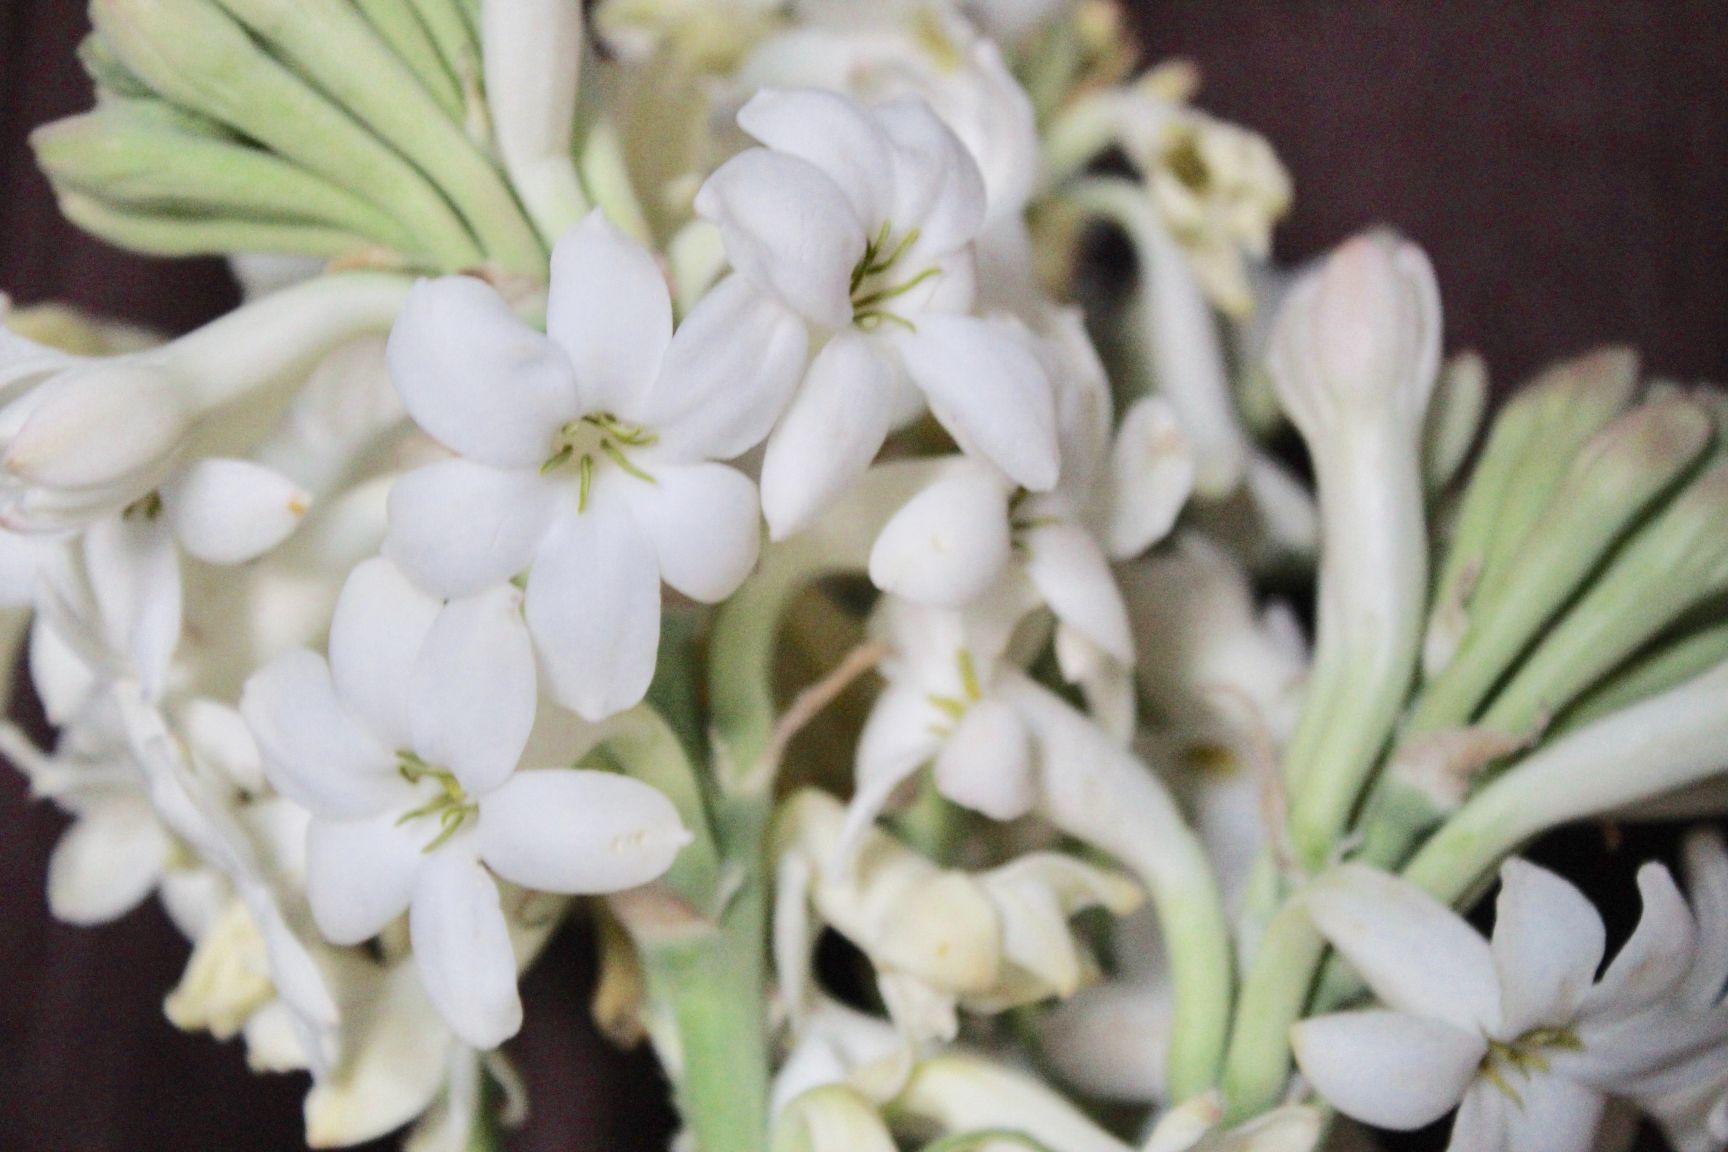 Buy Fresh Rajnigandha/Tuberose Flowers Bulk/Wholesale - BloomyBliss